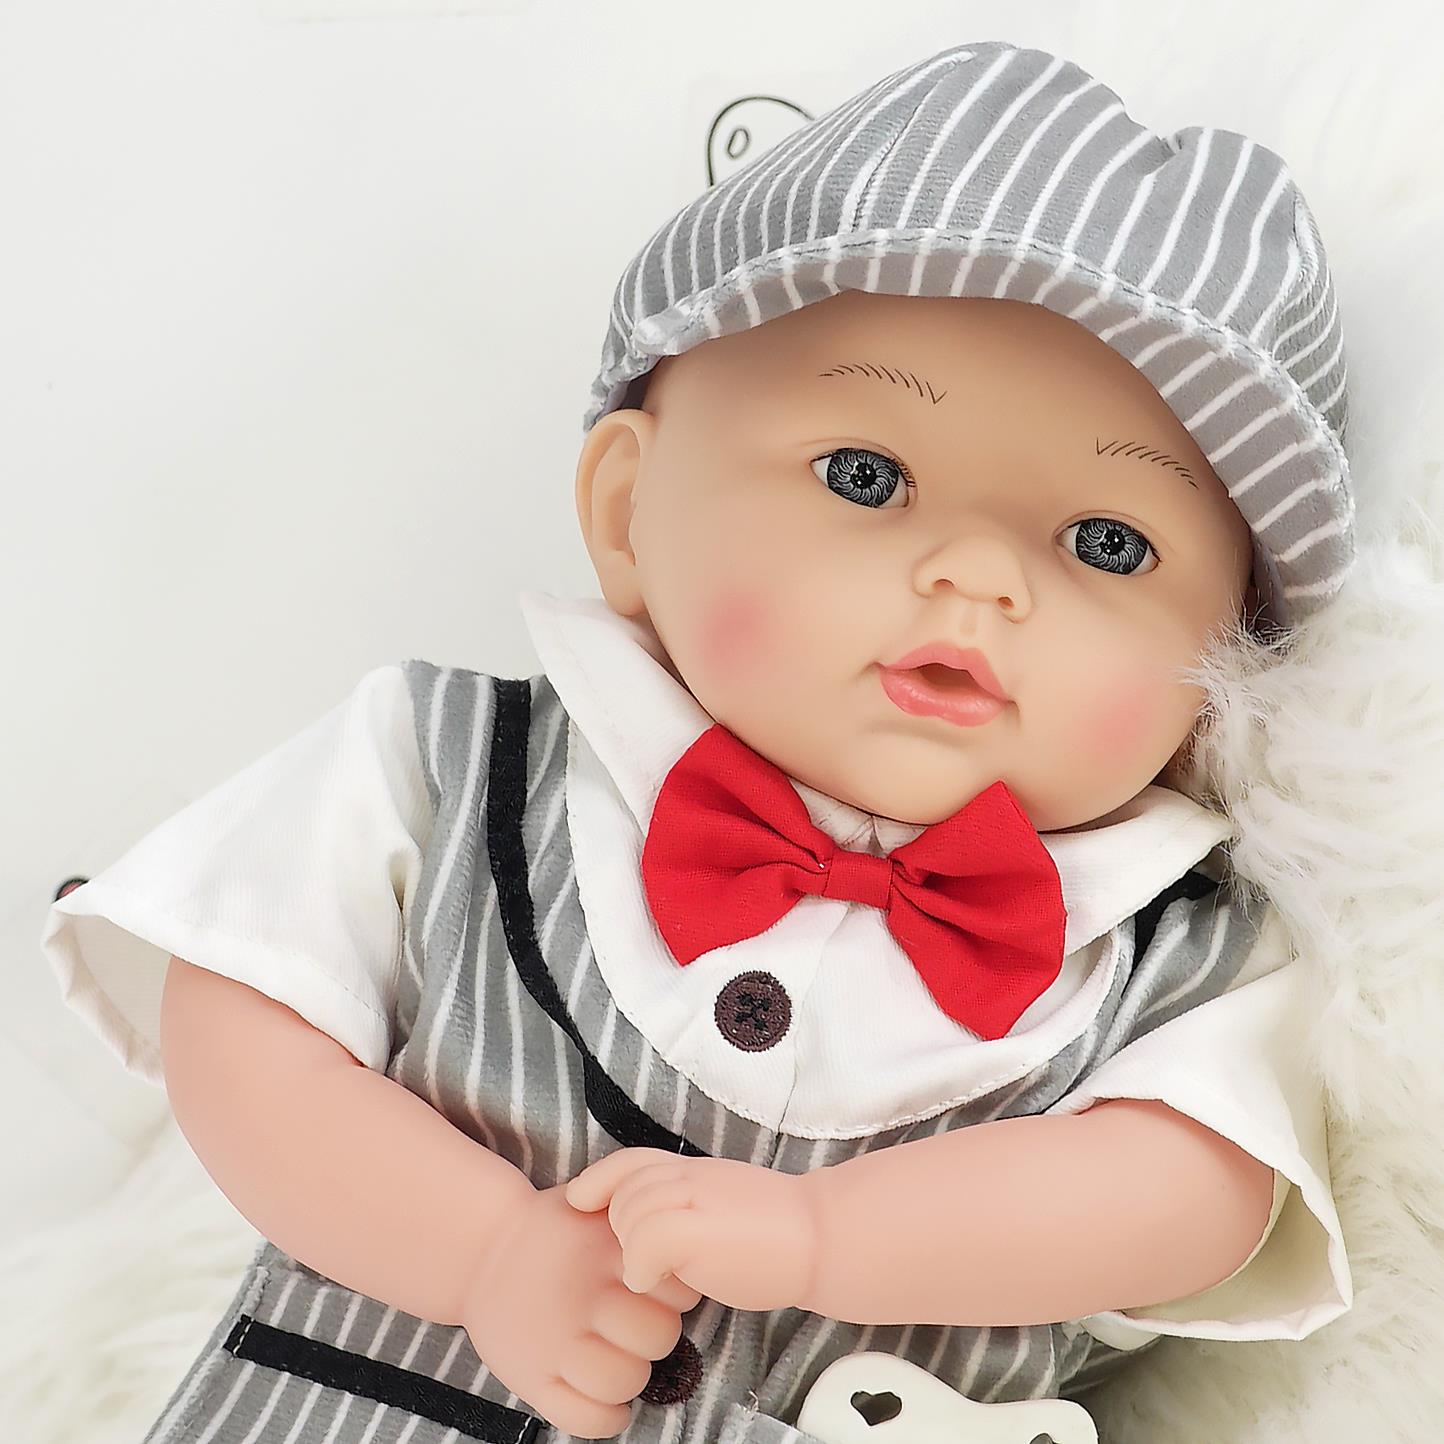 BiBi Baby Doll - Charlie (45 cm / 18") by BiBi Doll - UKBuyZone